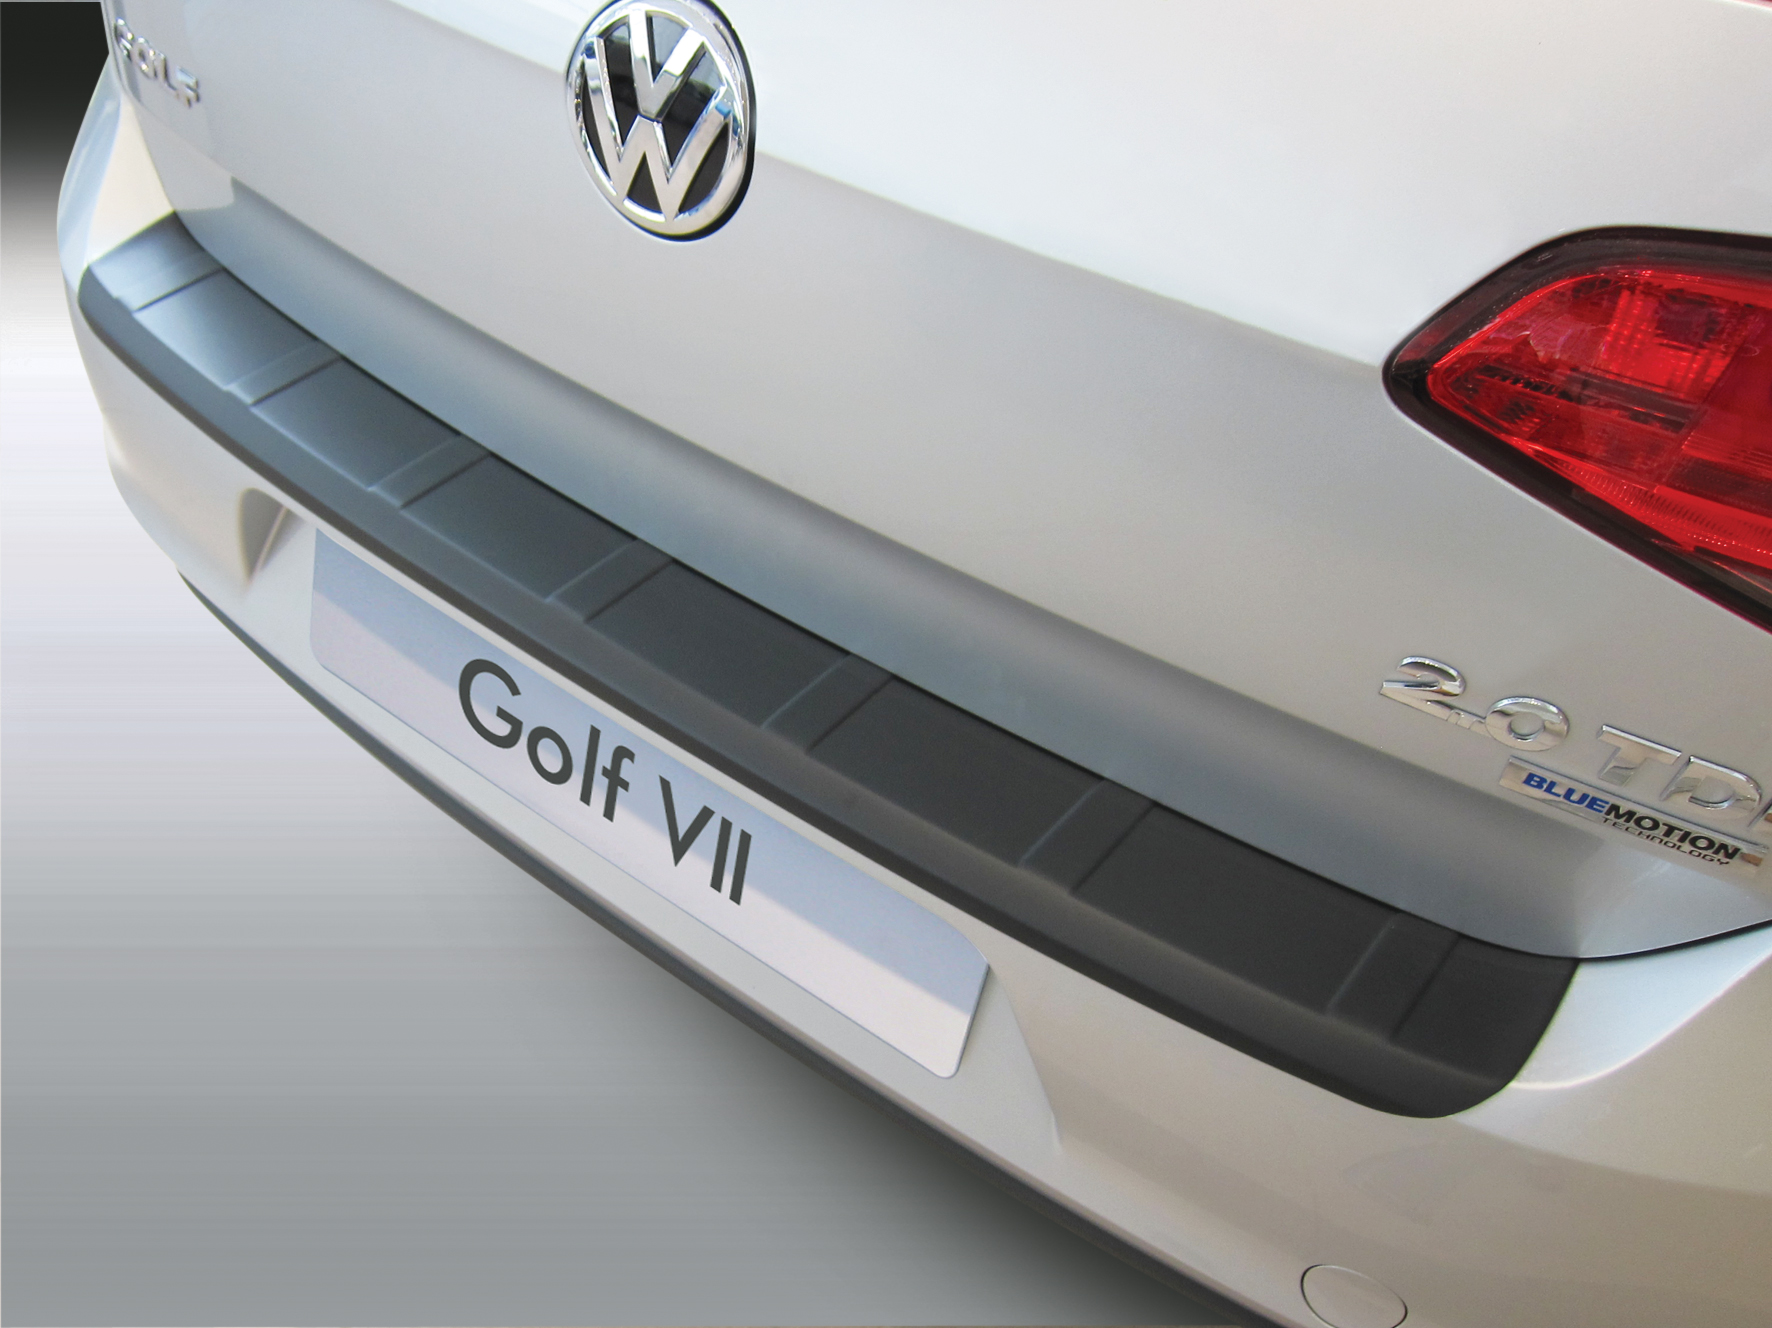 Ladekantenschutz mit Abkantung passend für Volkswagen Golf 7 VII 3 und 5  Türer auch für GTI und R (Ladekantenschutz in geriffelter Ausführung) VW ab  BJ. 11.2012> ABS Farbe schwarz